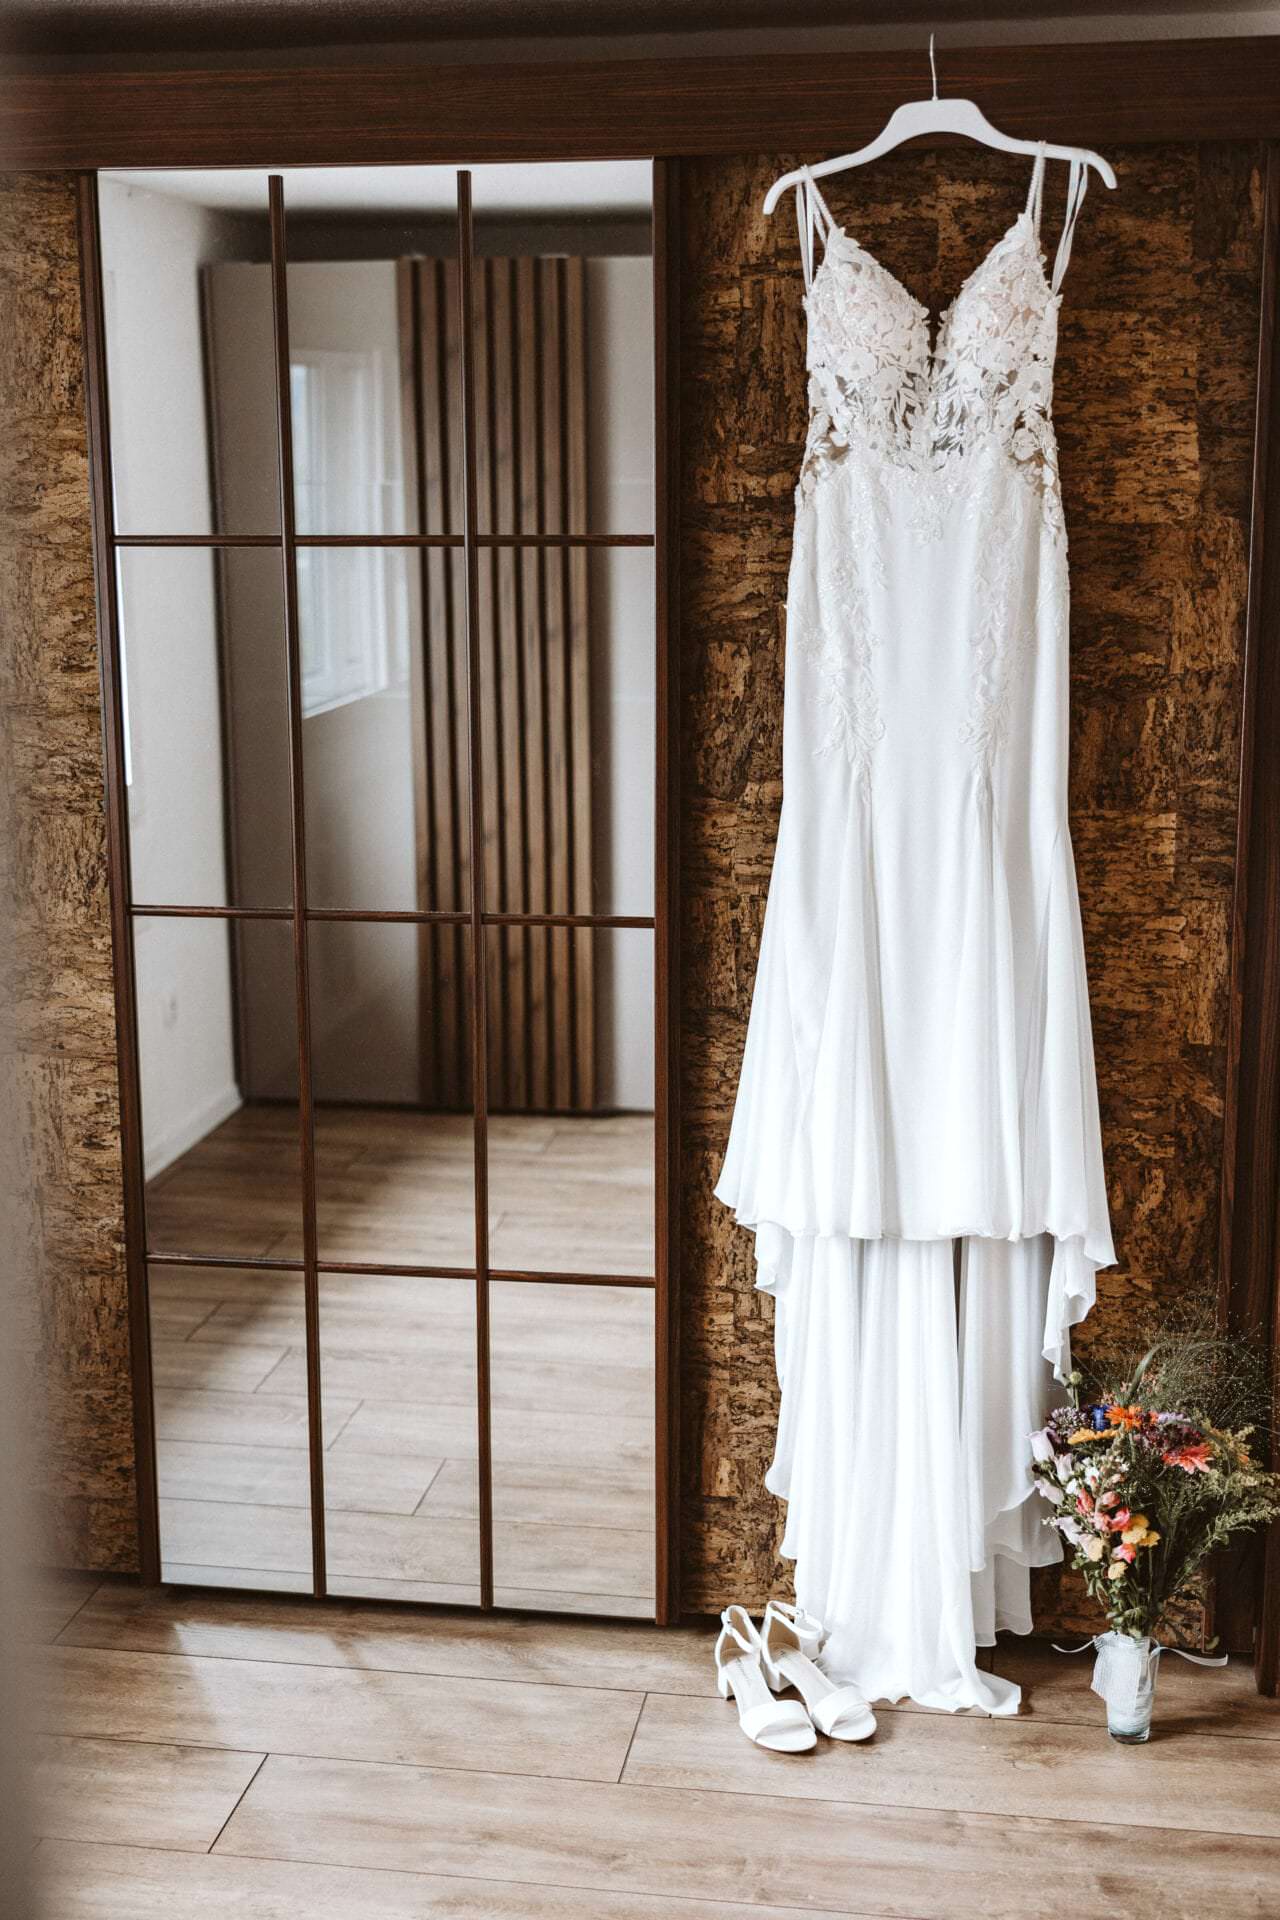 Hochzeitsfotograf Gladbeck Hochzeit Heiraten Hochzeitsfotos - Hochzeitskleid hängt auf einem weißen Kleiderbügel neben einem Spiegel. Unter dem Hochzeitskleid ist ein Blumenstrauß und Schuhe zu sehen